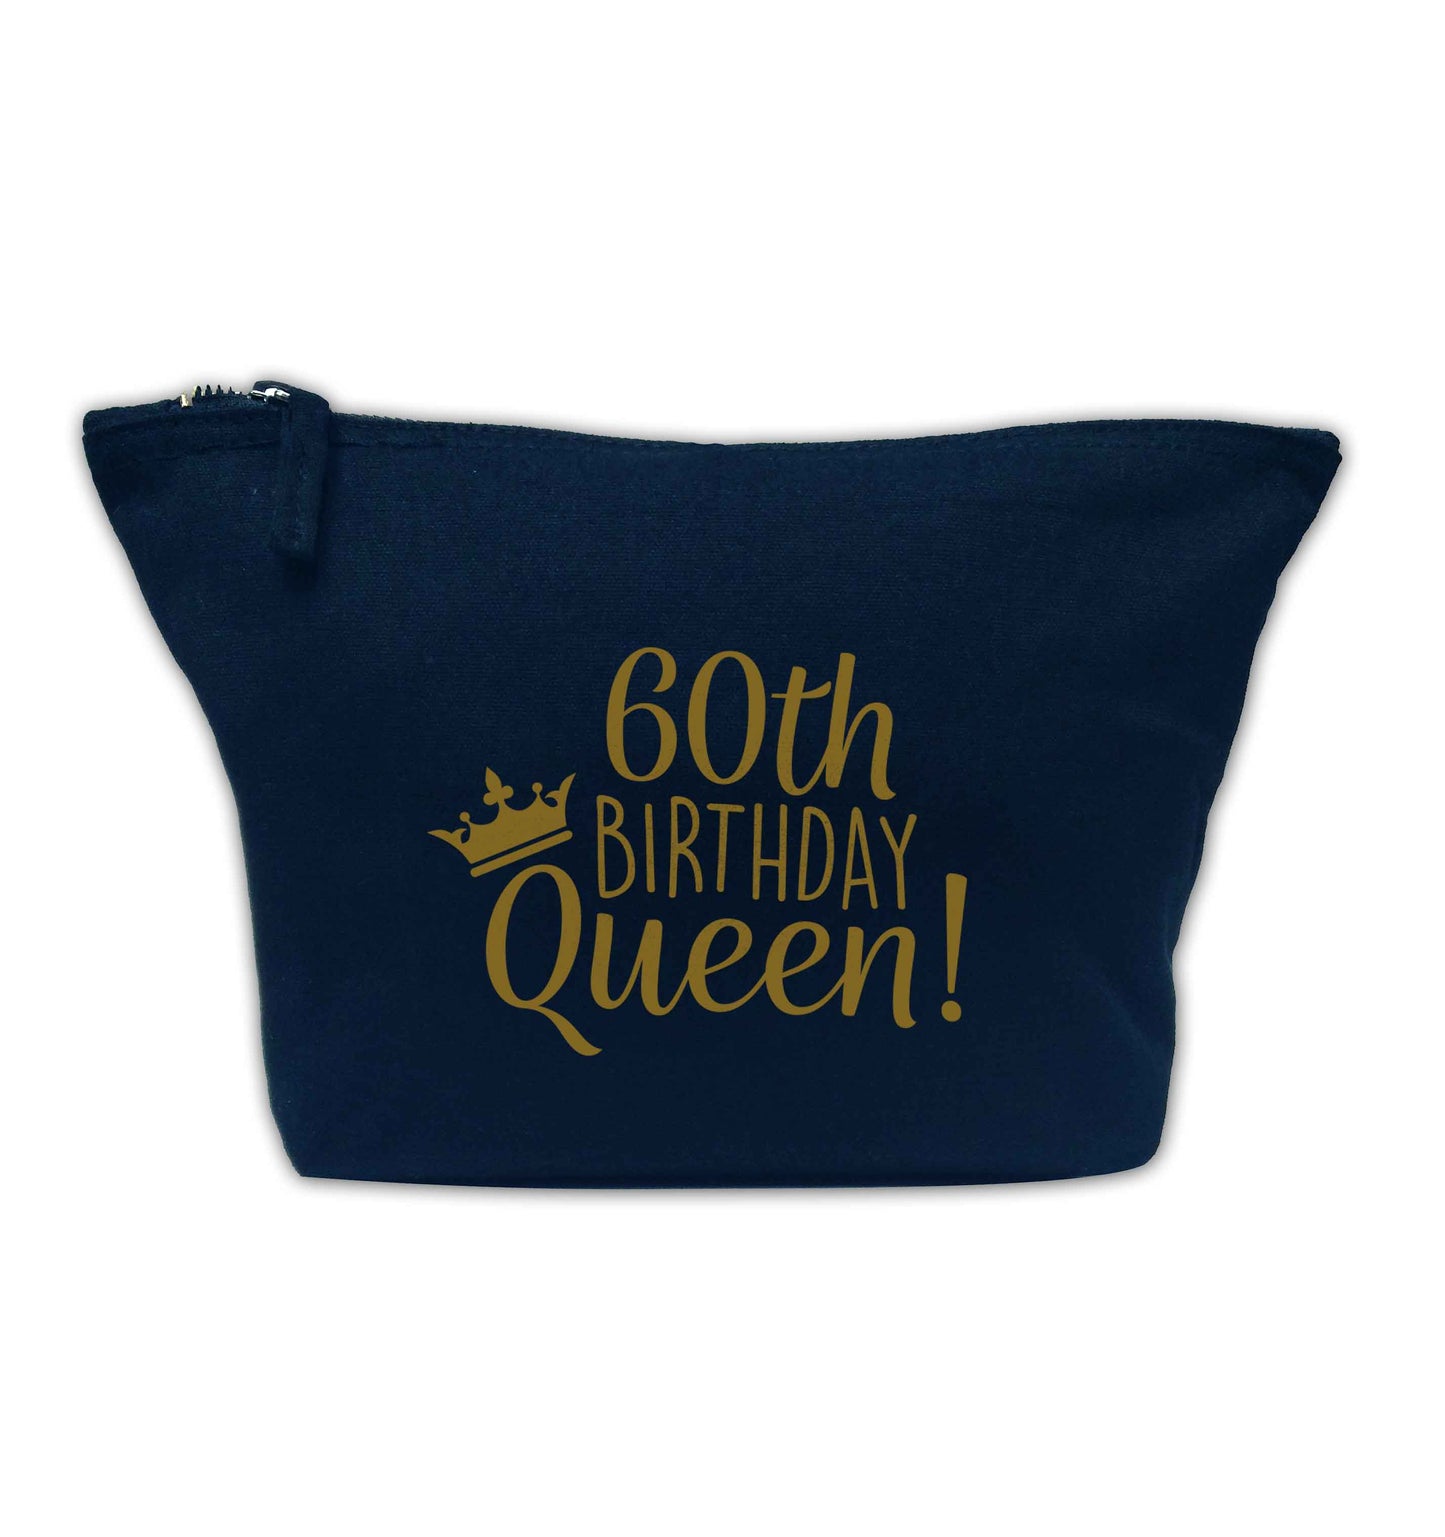 60th birthday Queen navy makeup bag